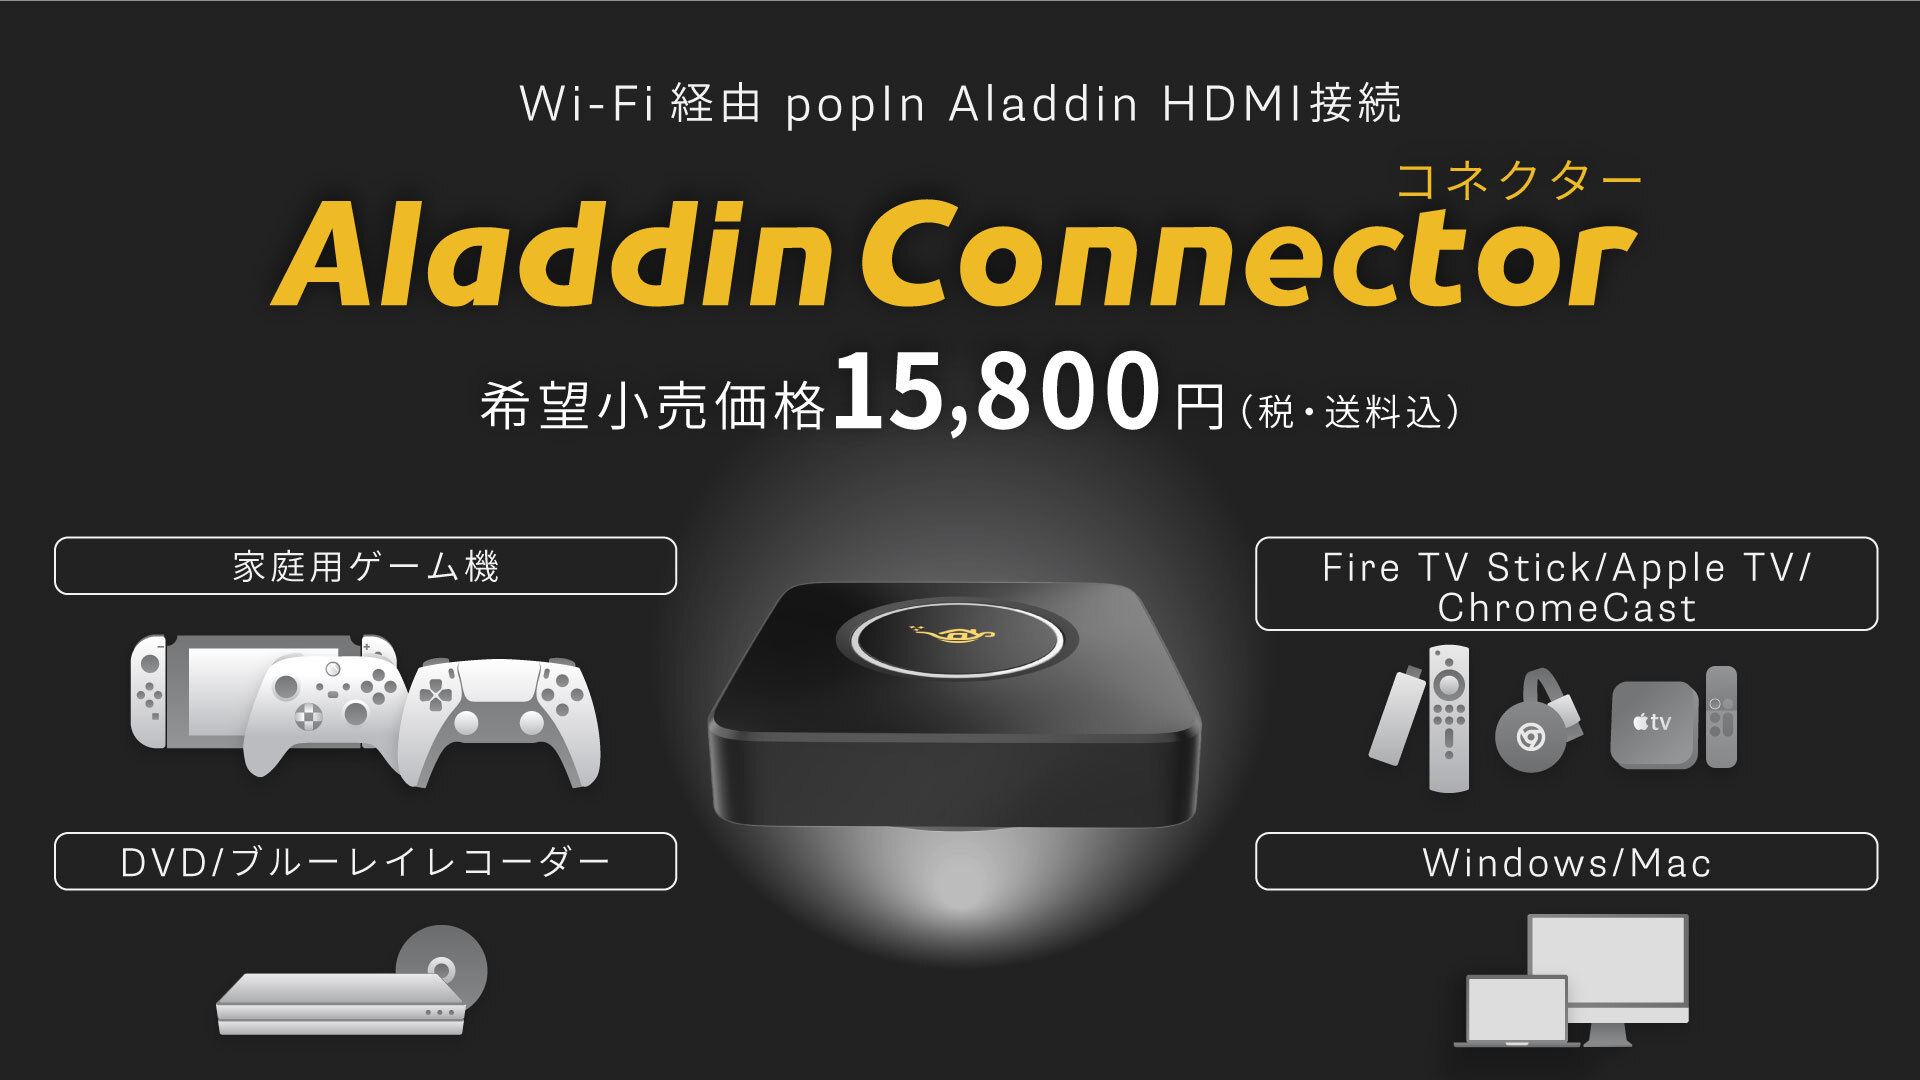 Aladdin Connector（第一世代）